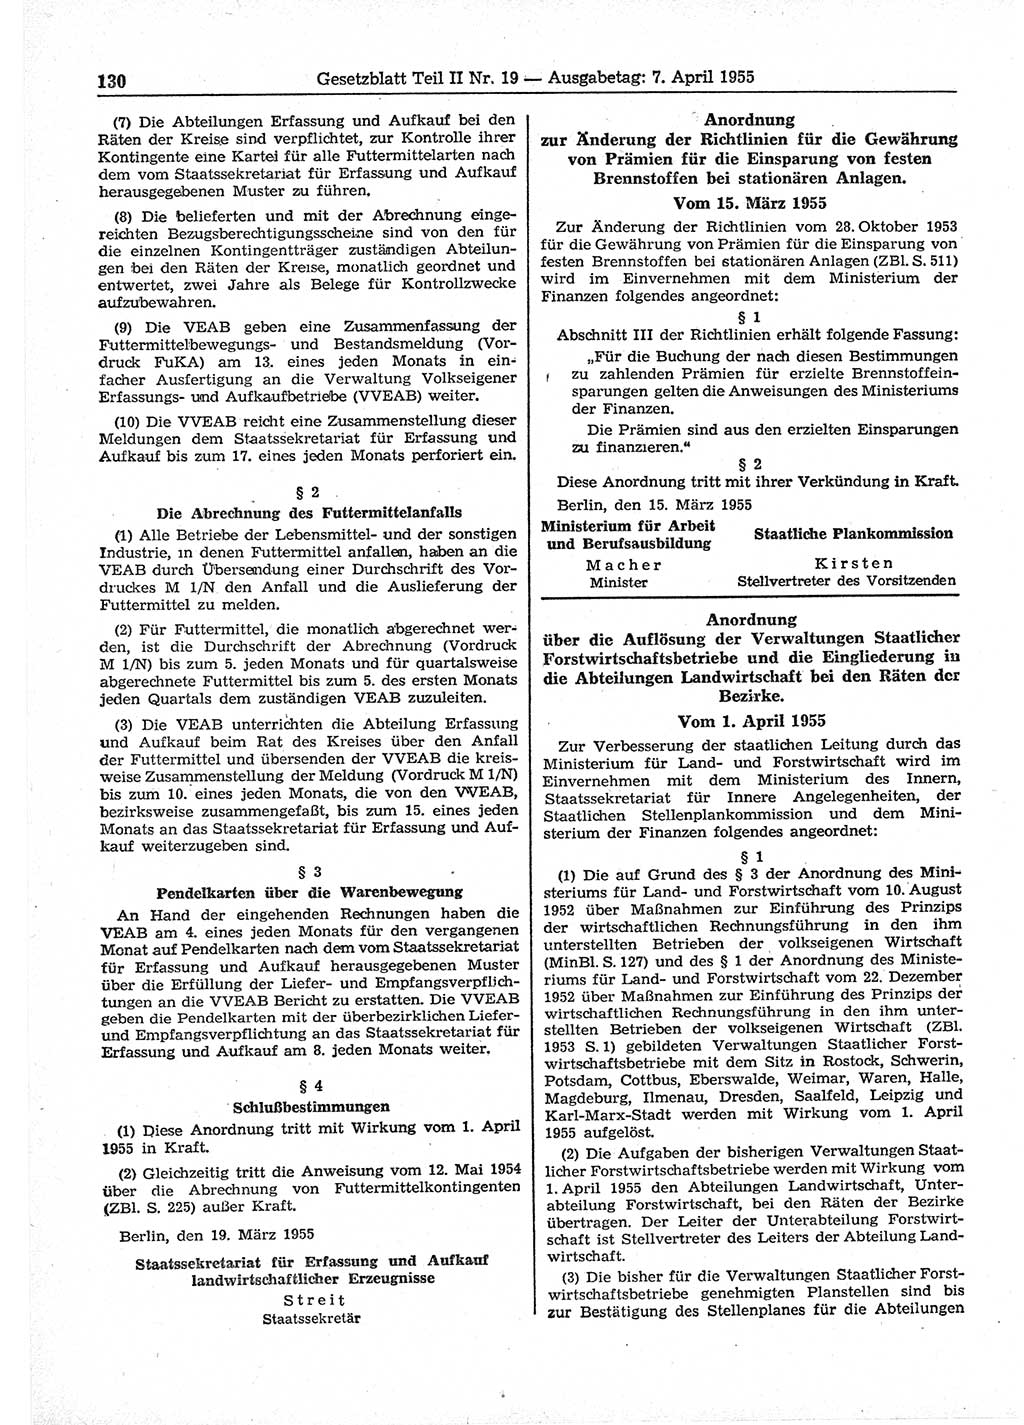 Gesetzblatt (GBl.) der Deutschen Demokratischen Republik (DDR) Teil ⅠⅠ 1955, Seite 130 (GBl. DDR ⅠⅠ 1955, S. 130)